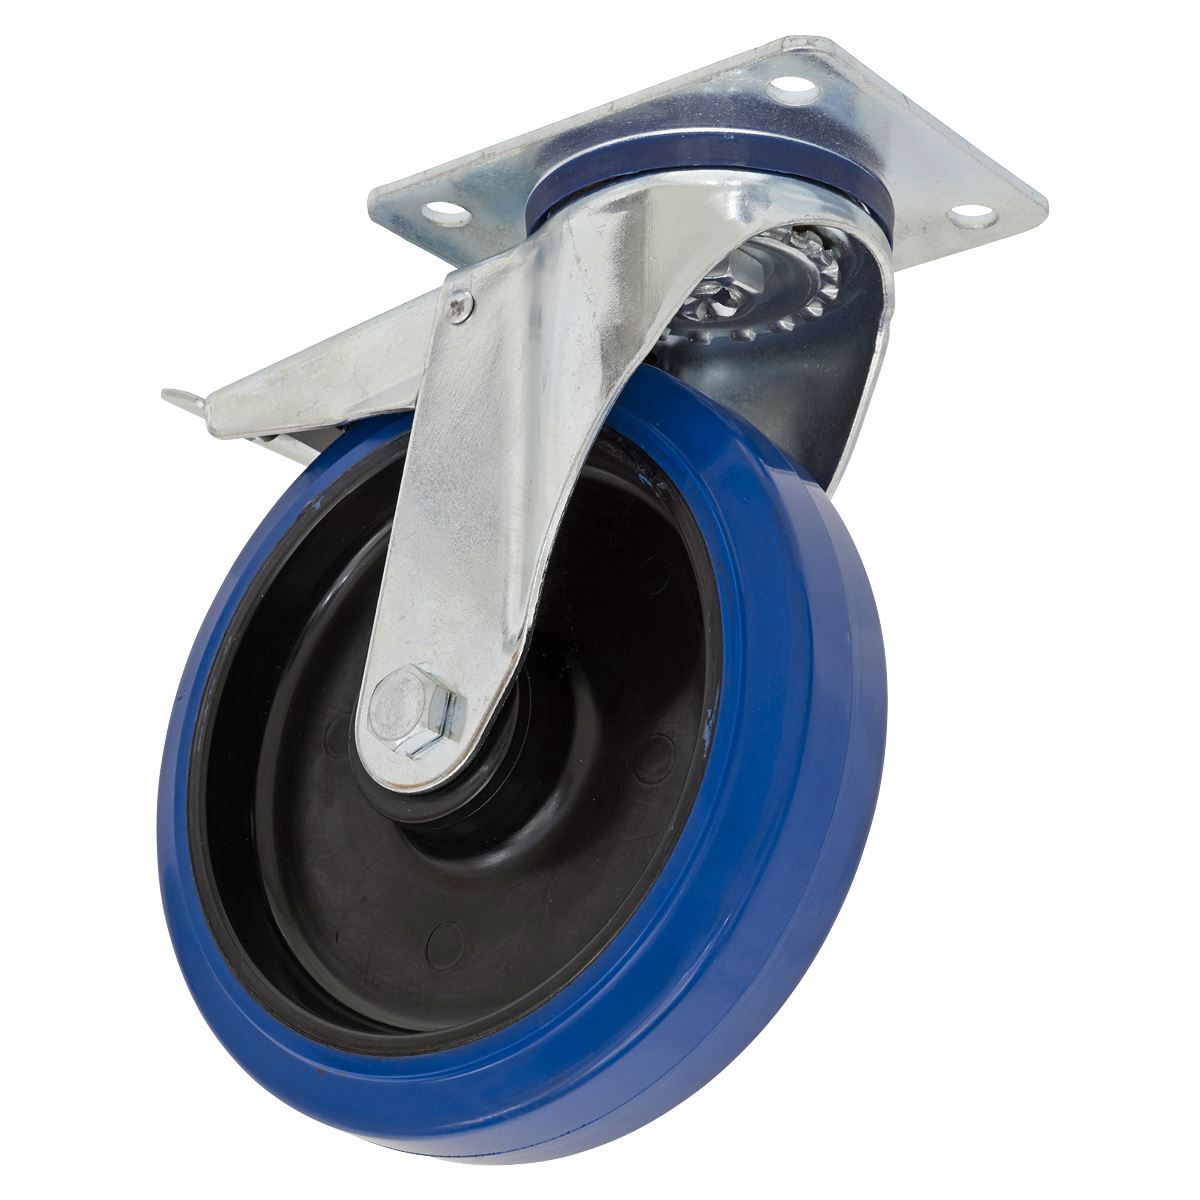 Sealey Heavy-Duty Blue Elastic Rubber Castor Wheel Swivel with Total Lock Ø200mm - Trade